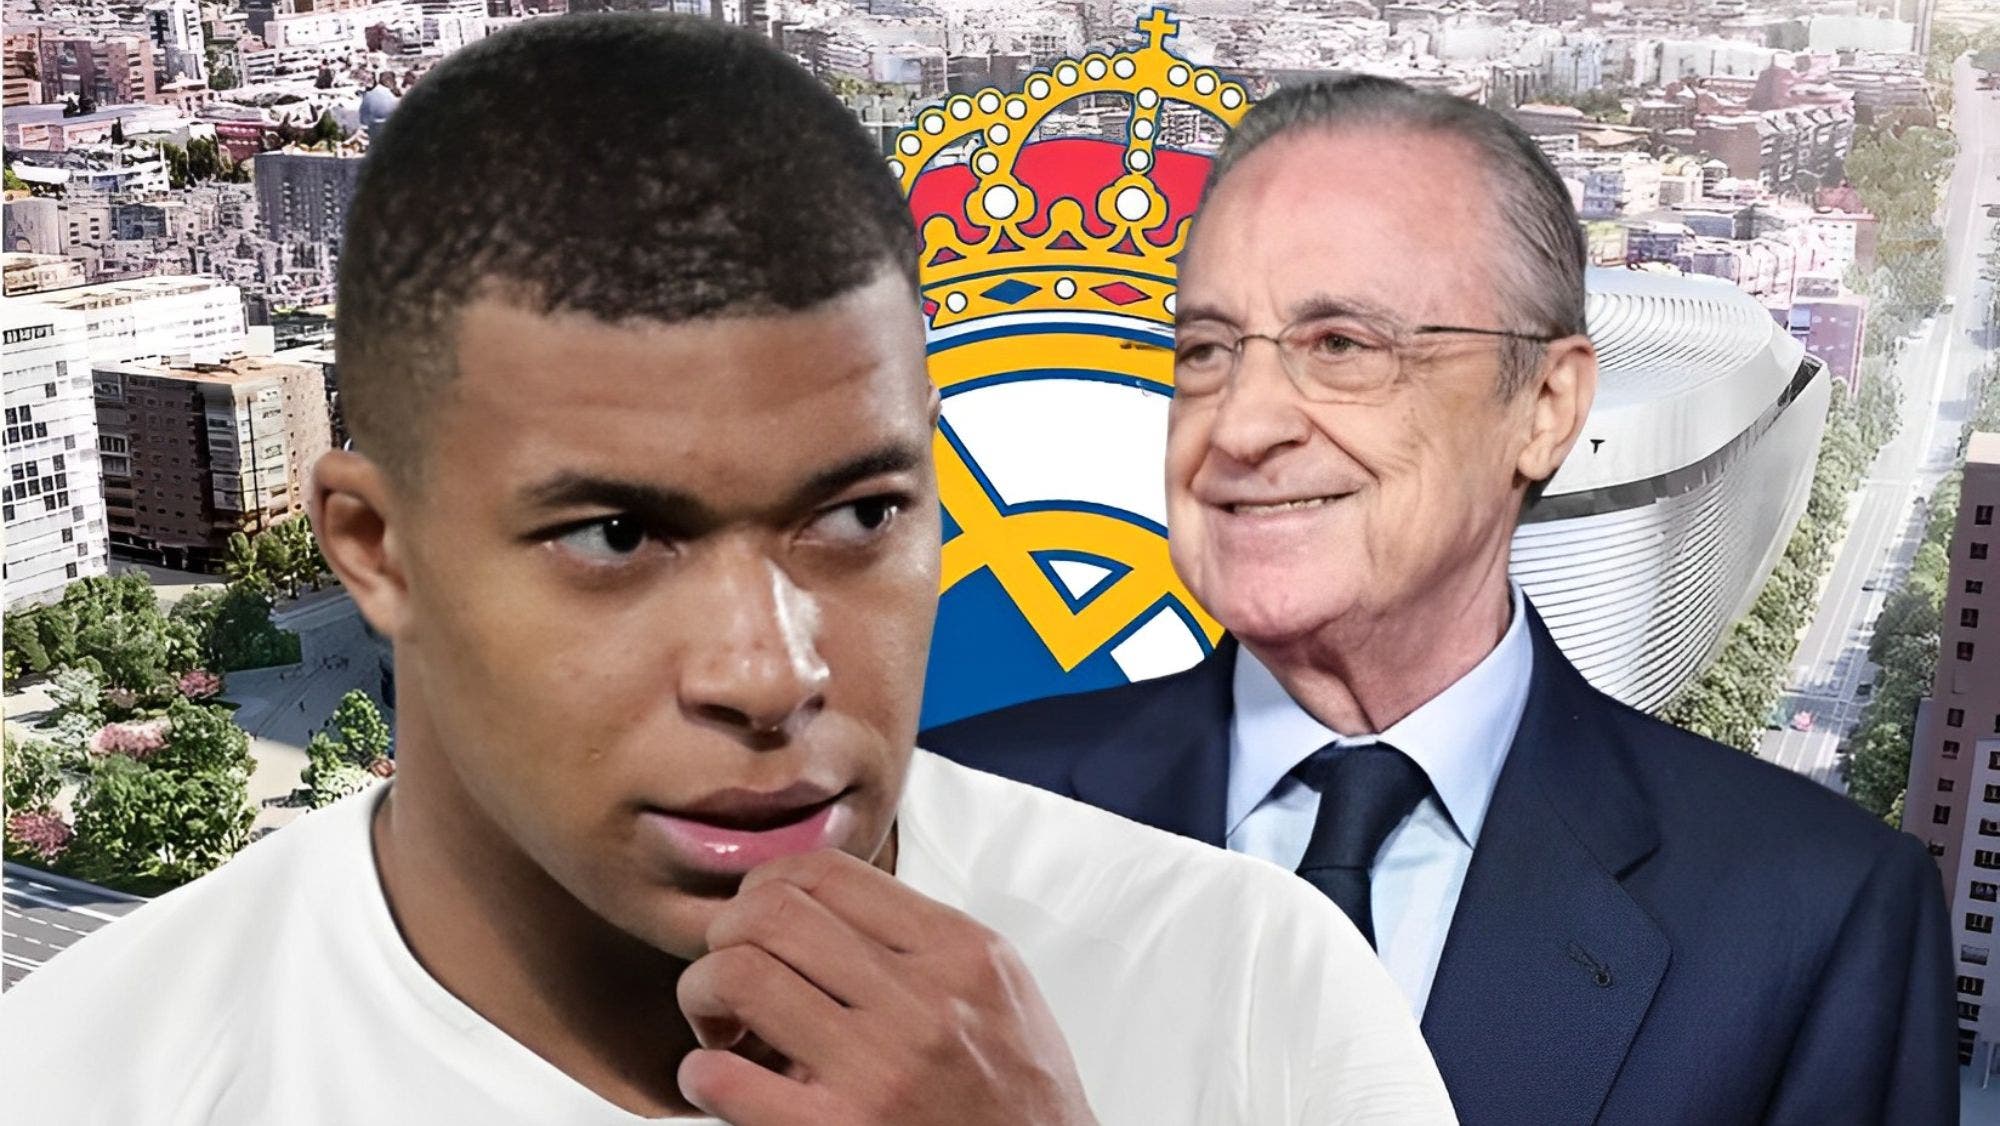 Florentino Pérez receives unexpected money to sign Mbappé
	
